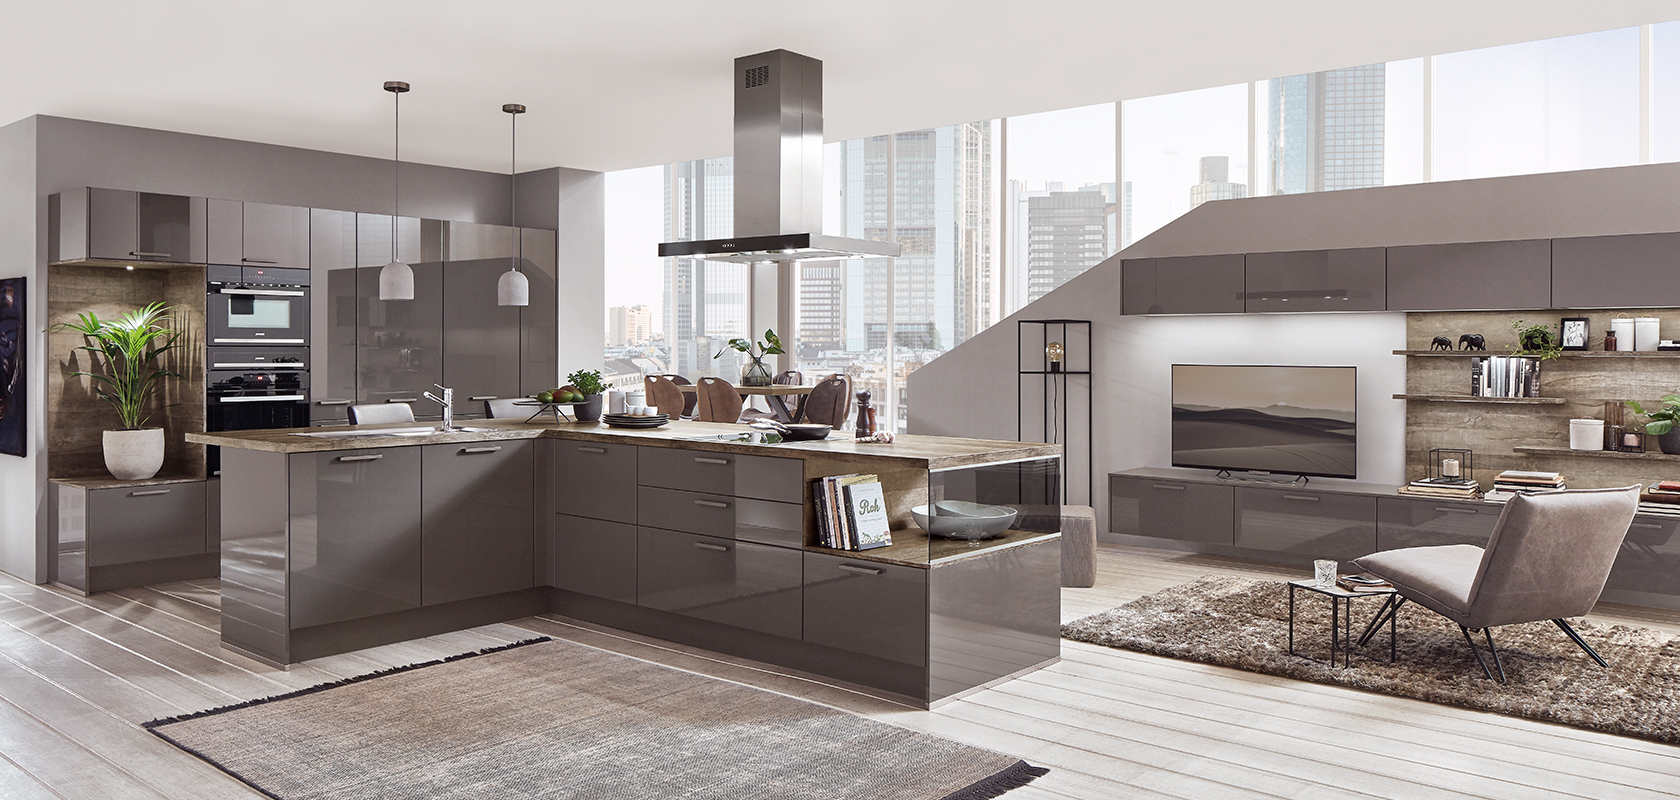 Elegante moderne Küche mit integrierten Geräten und einem passenden Wohnbereich, der Stadtblick durch große Fenster bietet und Funktionalität und Stil verbindet.